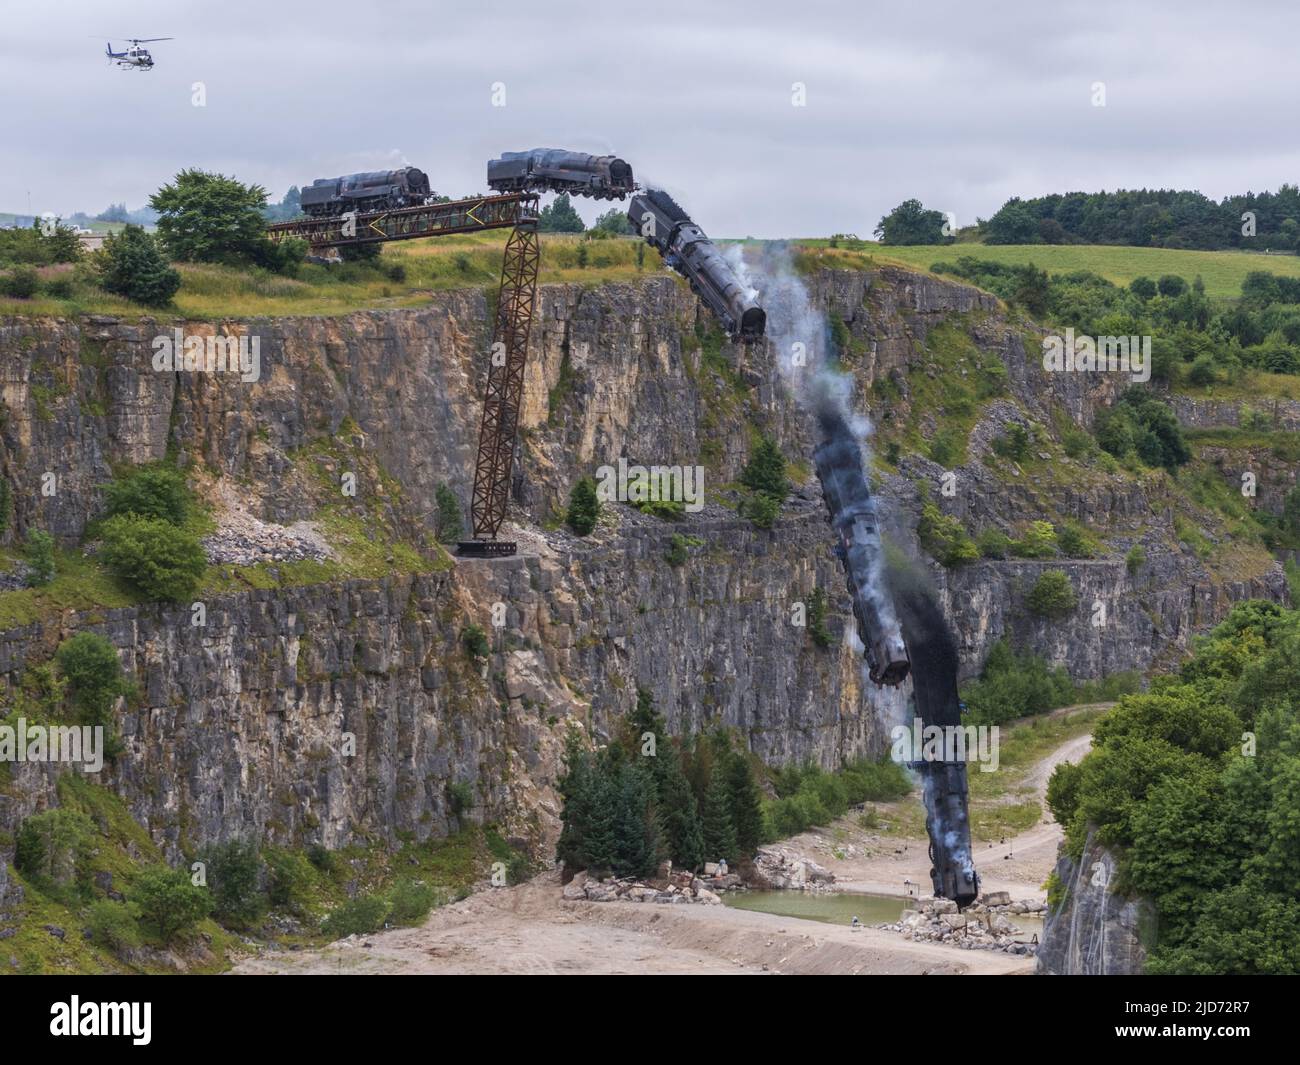 ***Video verfügbar*** Mission: Impossible 7 Lokomotivzug-Crashszene in Stoney Middleton, Derbyshire. Der nachgebaute Dampfzug der British Railway Britannia wird für die letzte Crashszene in Tom Cruise's neuestem Blockbuster-Film von der Klippe getrieben. Die Lokomotive fliegt in spektakulärem Stil durch die Luft, bevor sie in den Steinbruch darunter stürzt. Die Szene wurde von zwei Hubschraubern und vielen entfernten Kameras gefilmt. Tom Cruise kam kurz vor der letzten Absturzszene in seinem Personalhubschrauber an, er flog um den Film, bevor er auf den Feldern in der Nähe der Eisenbahnstrecke über dem Steinbruch landete. Der Dampfstoß tr Stockfoto